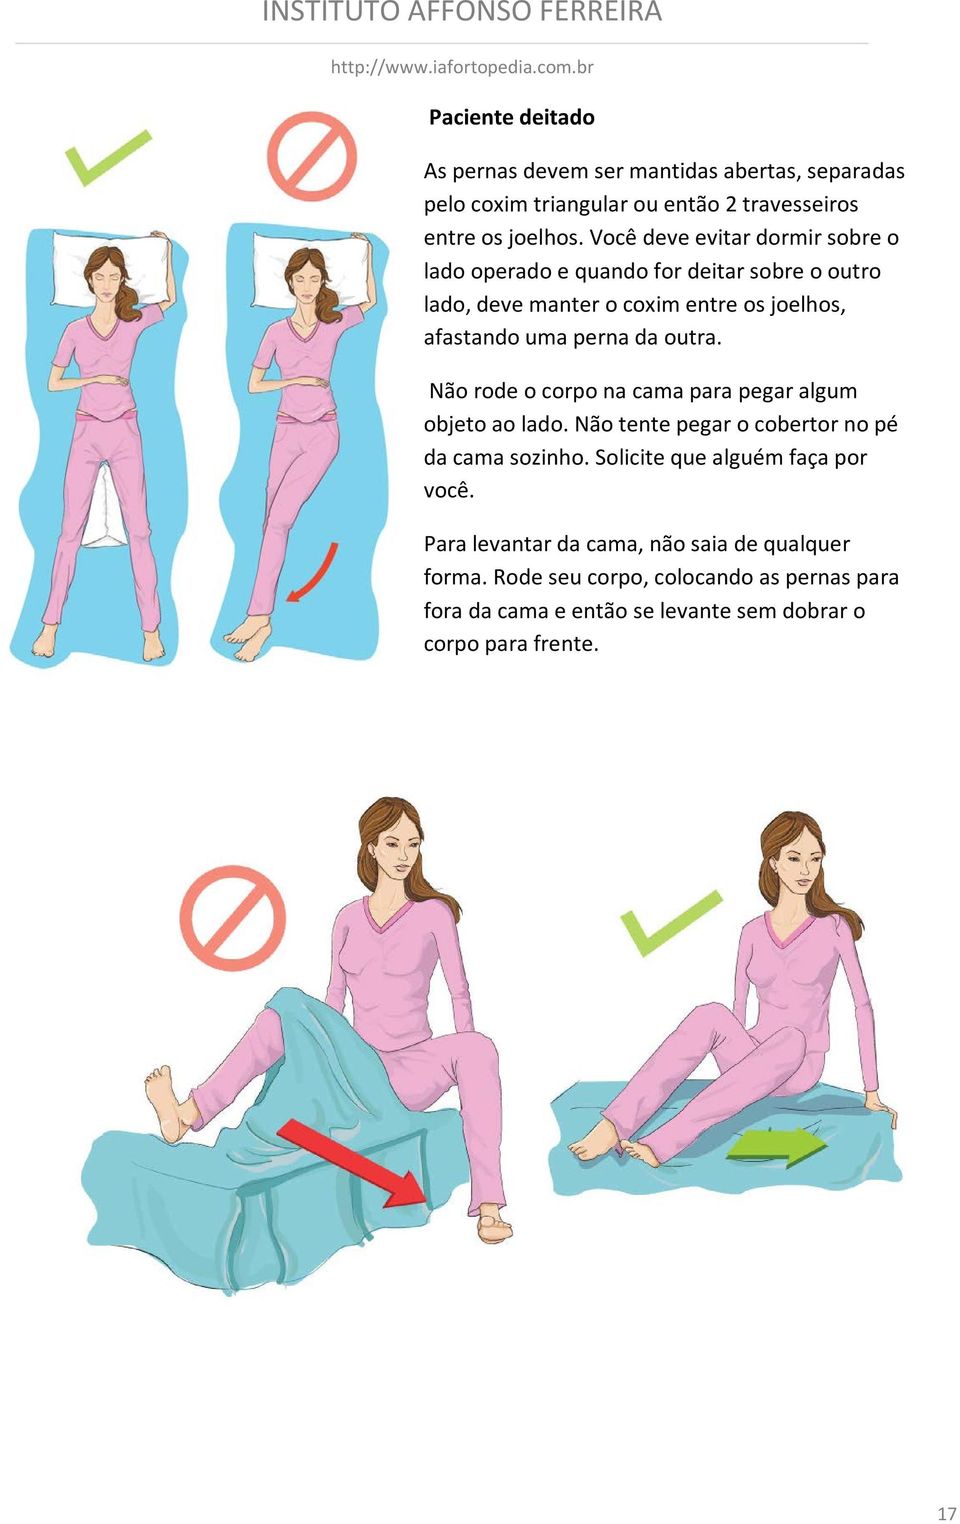 outra. Não rode o corpo na cama para pegar algum objeto ao lado. Não tente pegar o cobertor no pé da cama sozinho.